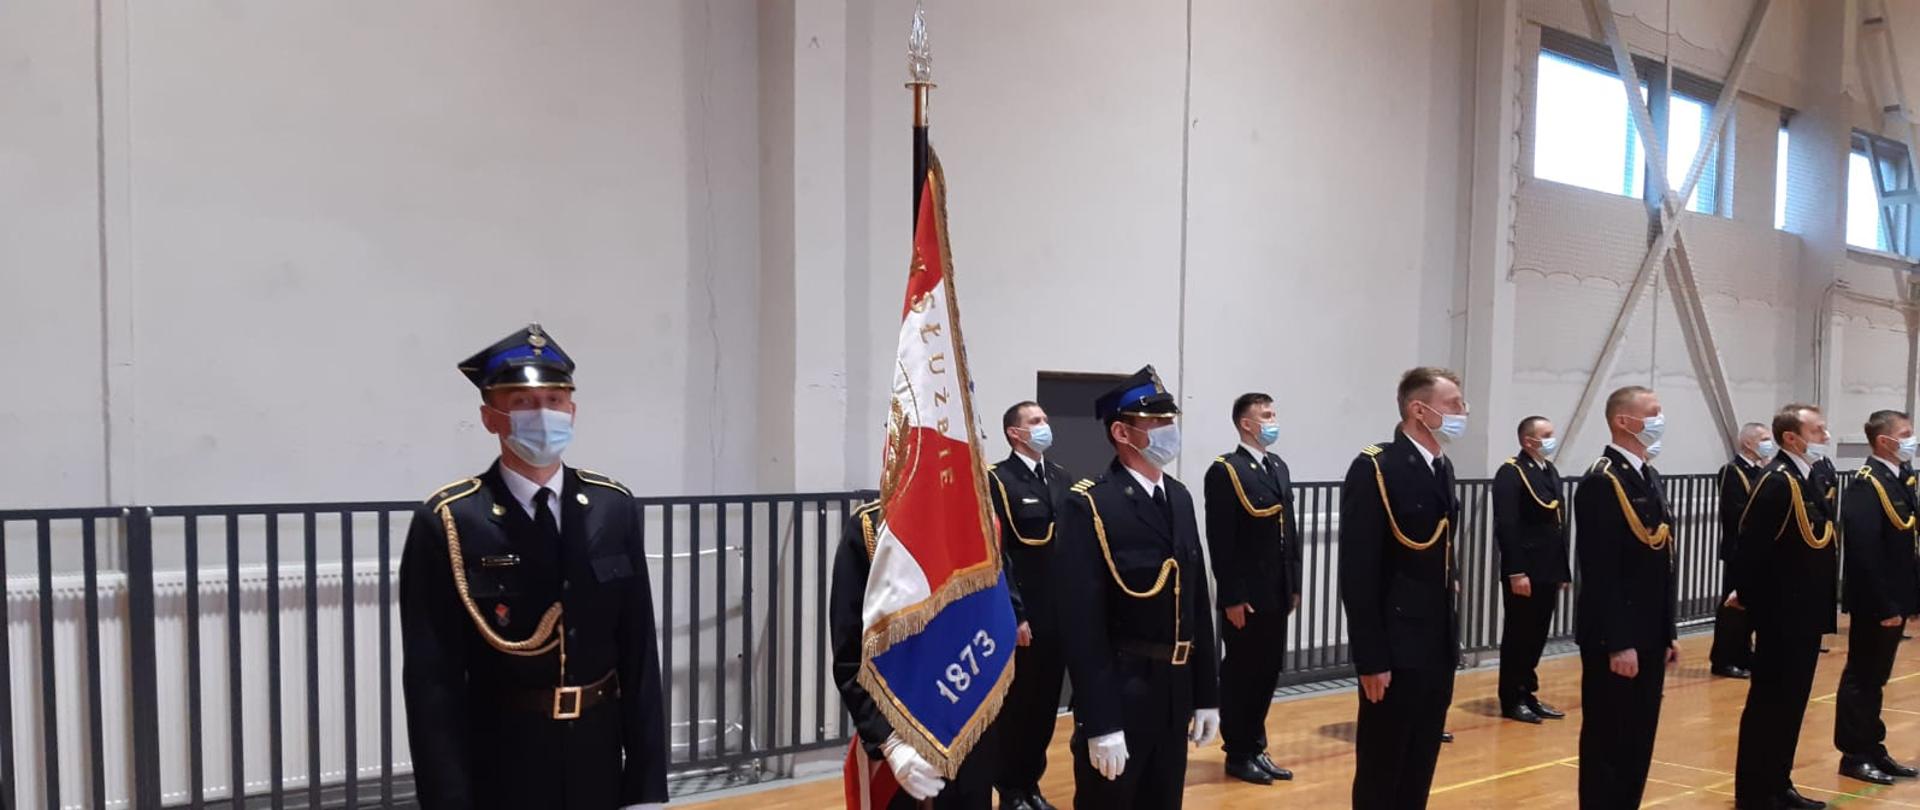 Zdjęcie przedstawia strażaków ubranych w mundury wyjściowe, jeden z nich trzyma sztandar. Zdjęcie wykonane na sali gimnastycznej.